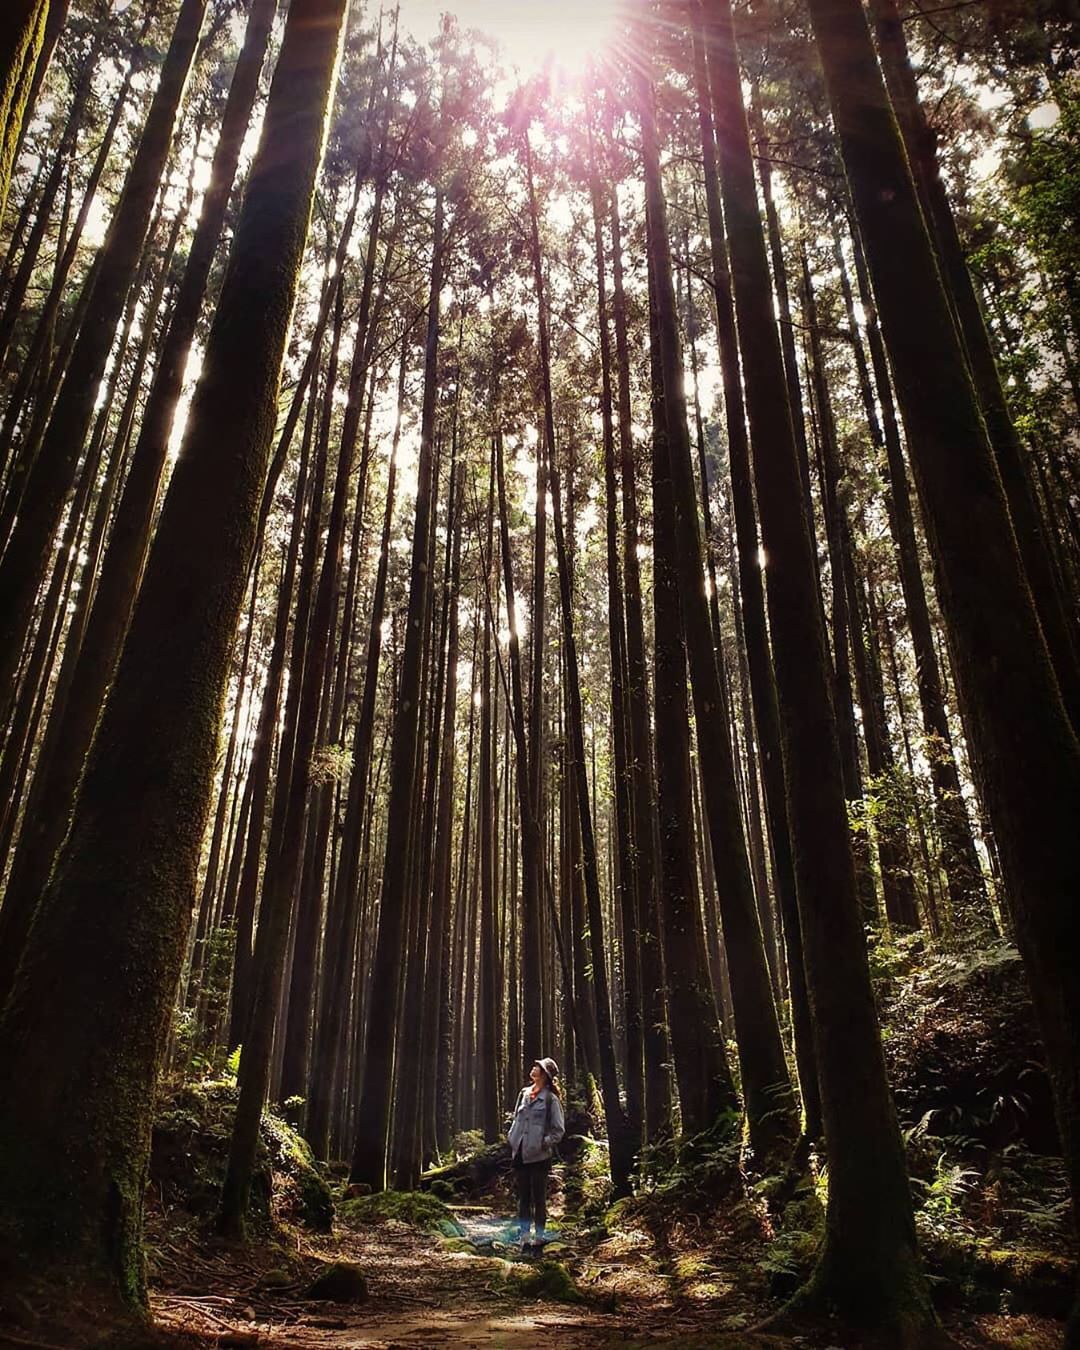 讓我們來阿里山沐浴在陽光下、樹林中吧- ⠀⠀⠀⠀⠀⠀⠀⠀⠀⠀⠀⠀感謝 @wu_pi 分享的美照❤️- #travelalishan...